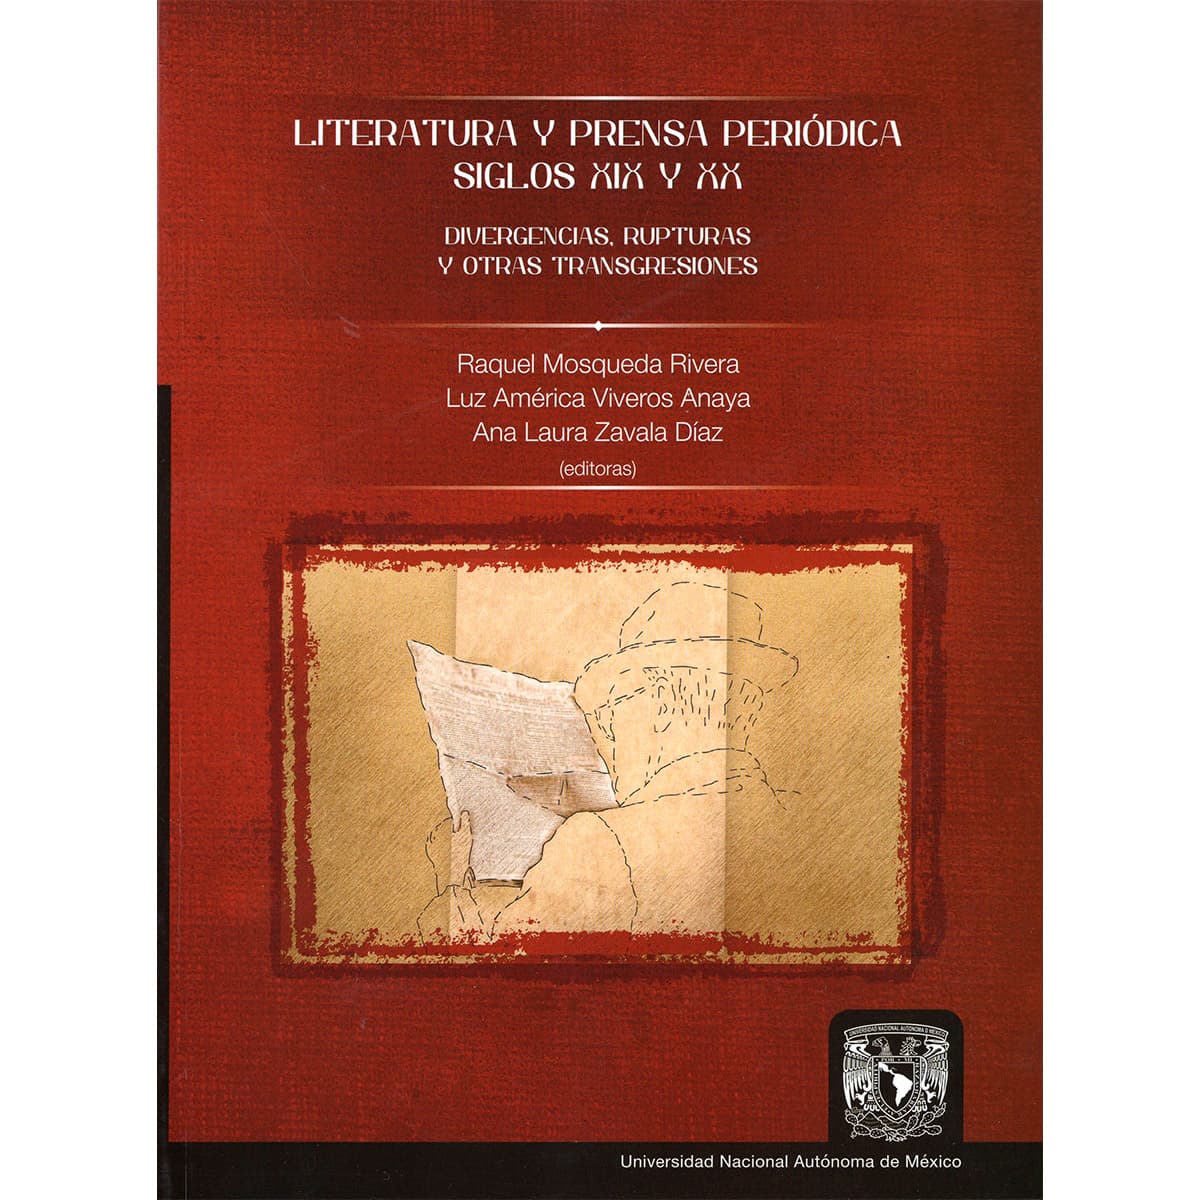 LITERATURA Y PRENSA PERIÓDICA. SIGLO XIX Y XX. DIVERGENCIAS, RUPTURAS Y OTRAS TRANSGRESIONES